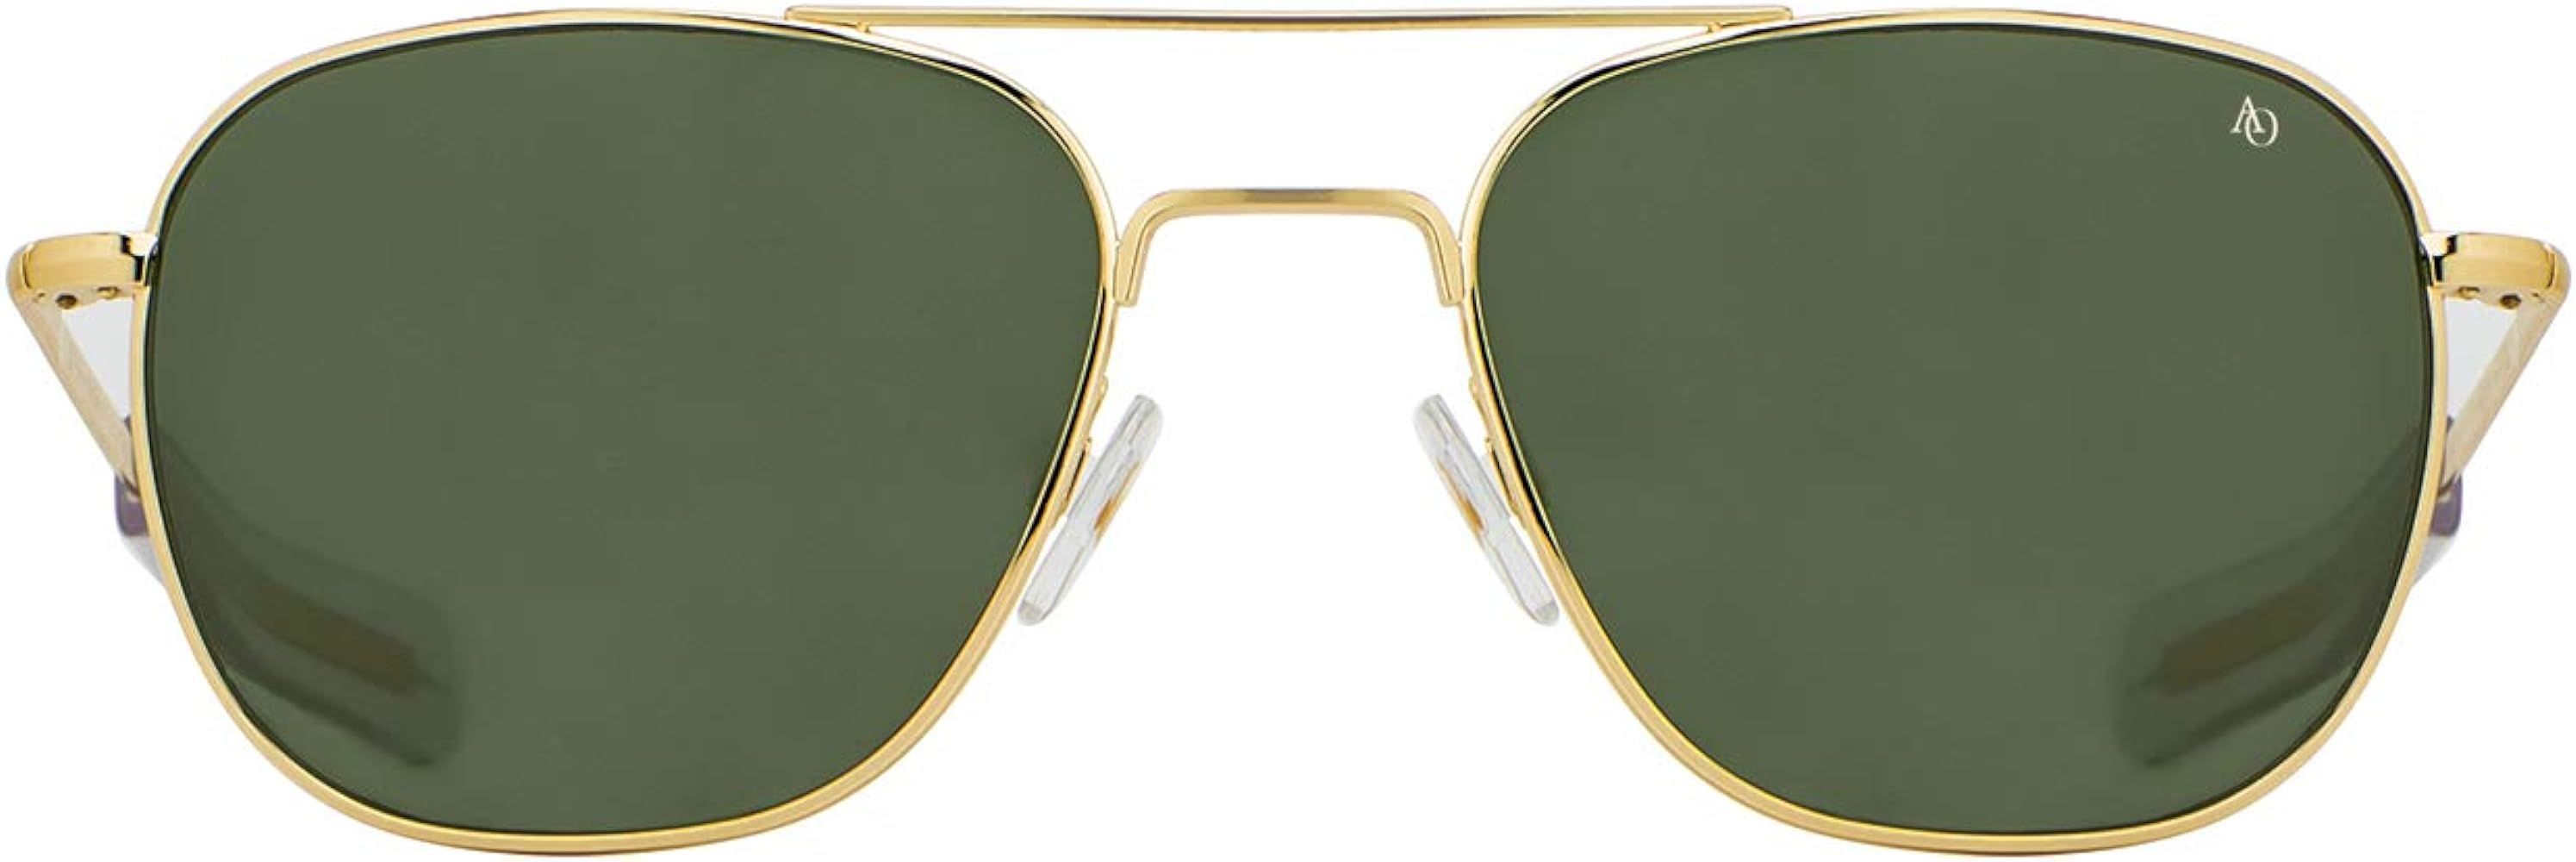 Amazon.com: AO Original Pilot Sunglasses - Gold - True Color Gray SkyMaster Glass Lenses - Bayone... | Amazon (US)